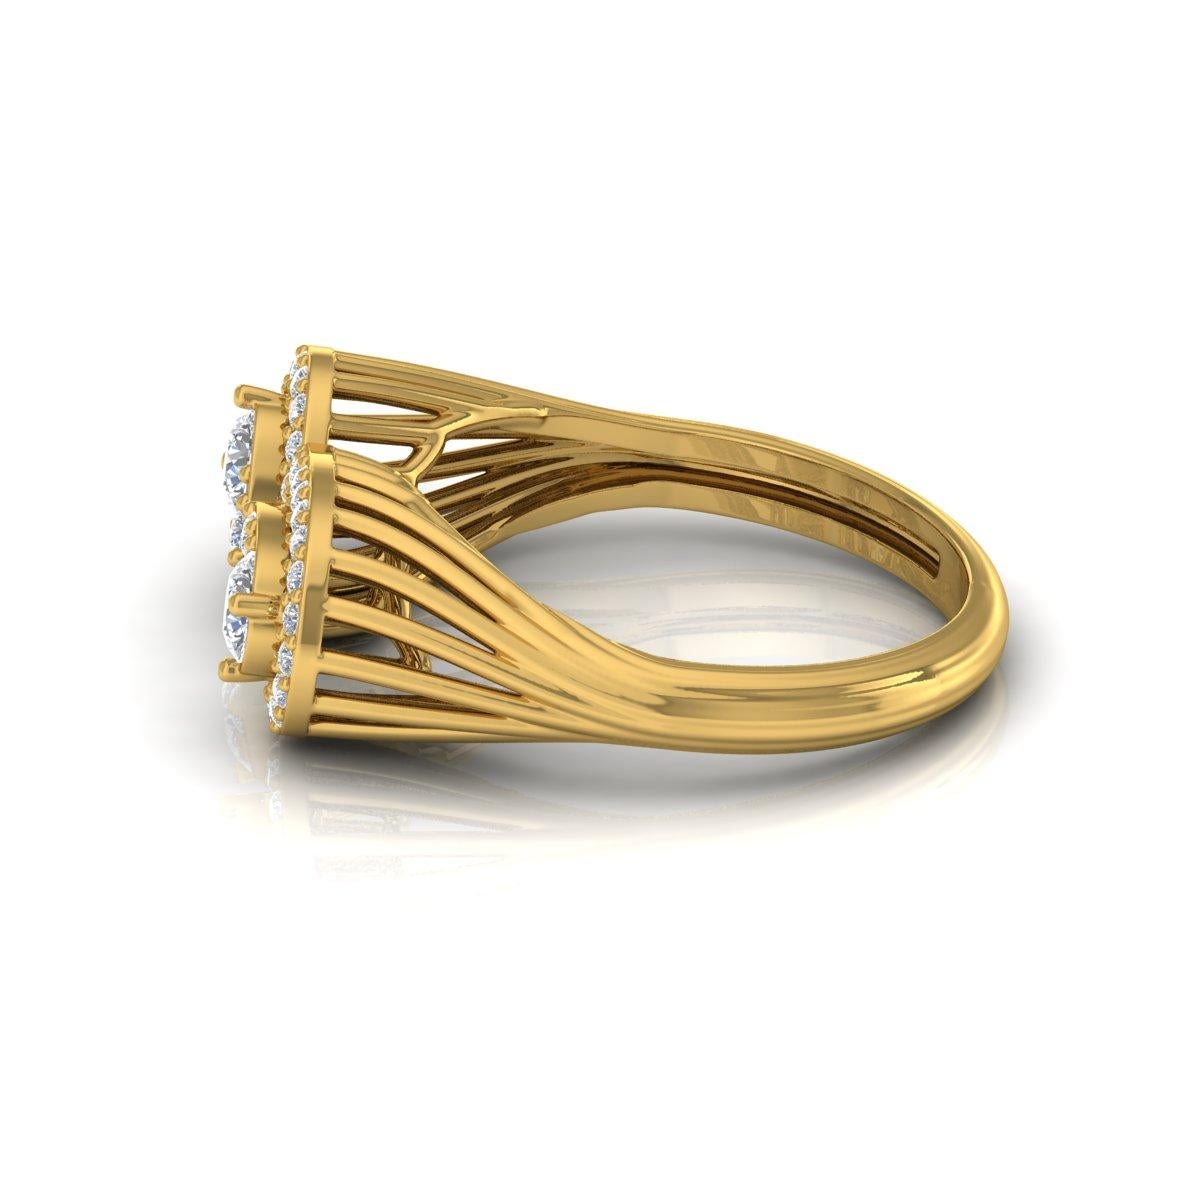 Taille ronde Bague manchette en or jaune 18 carats avec diamants naturels de 0,60 carat, fabrication artisanale en vente